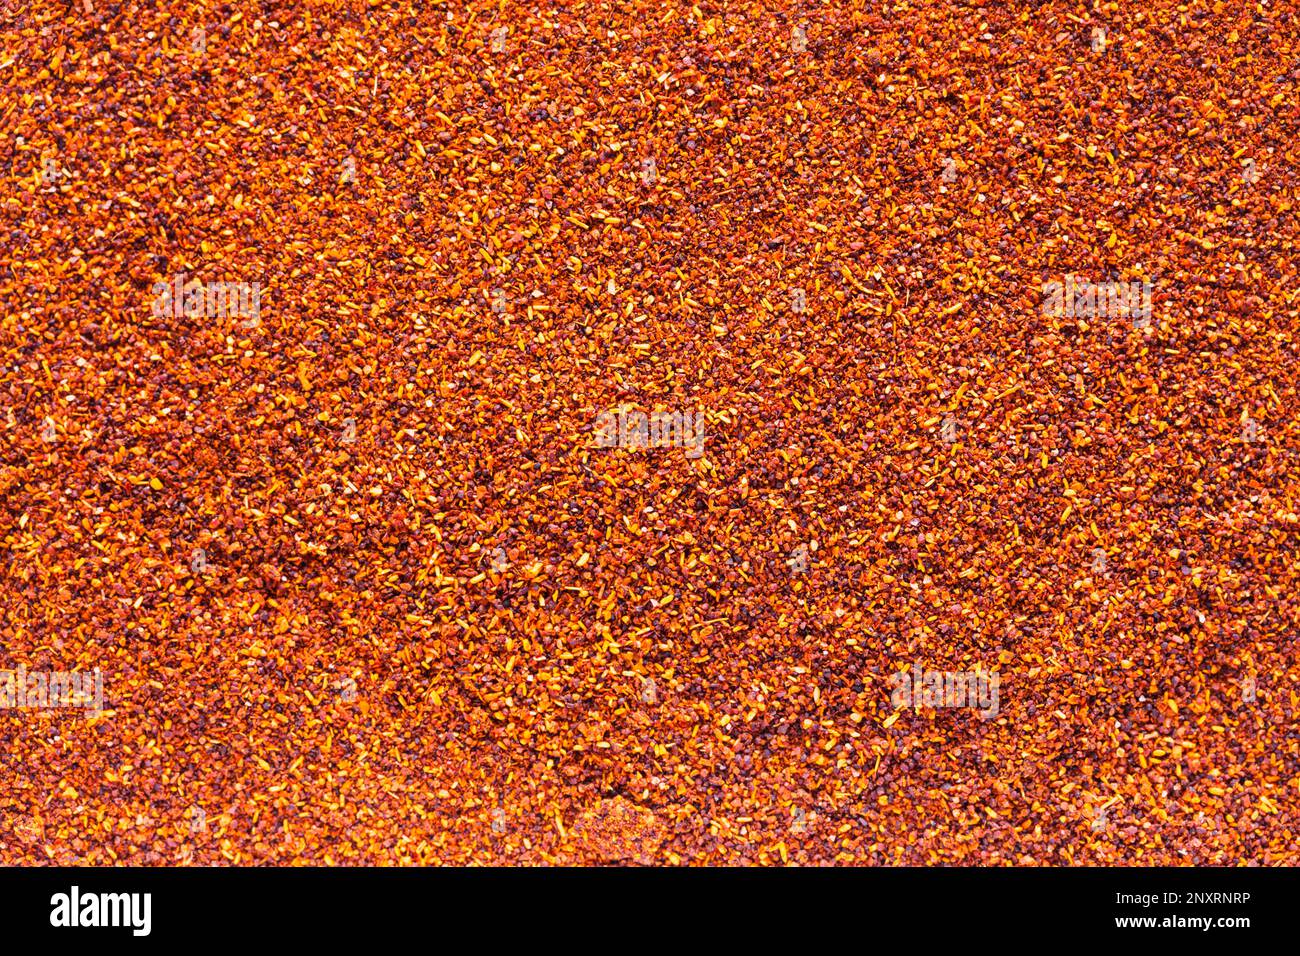 Hintergrund Des Trockenen Roten Chilipulvers Mit Gewürzhaufen. Stockfoto